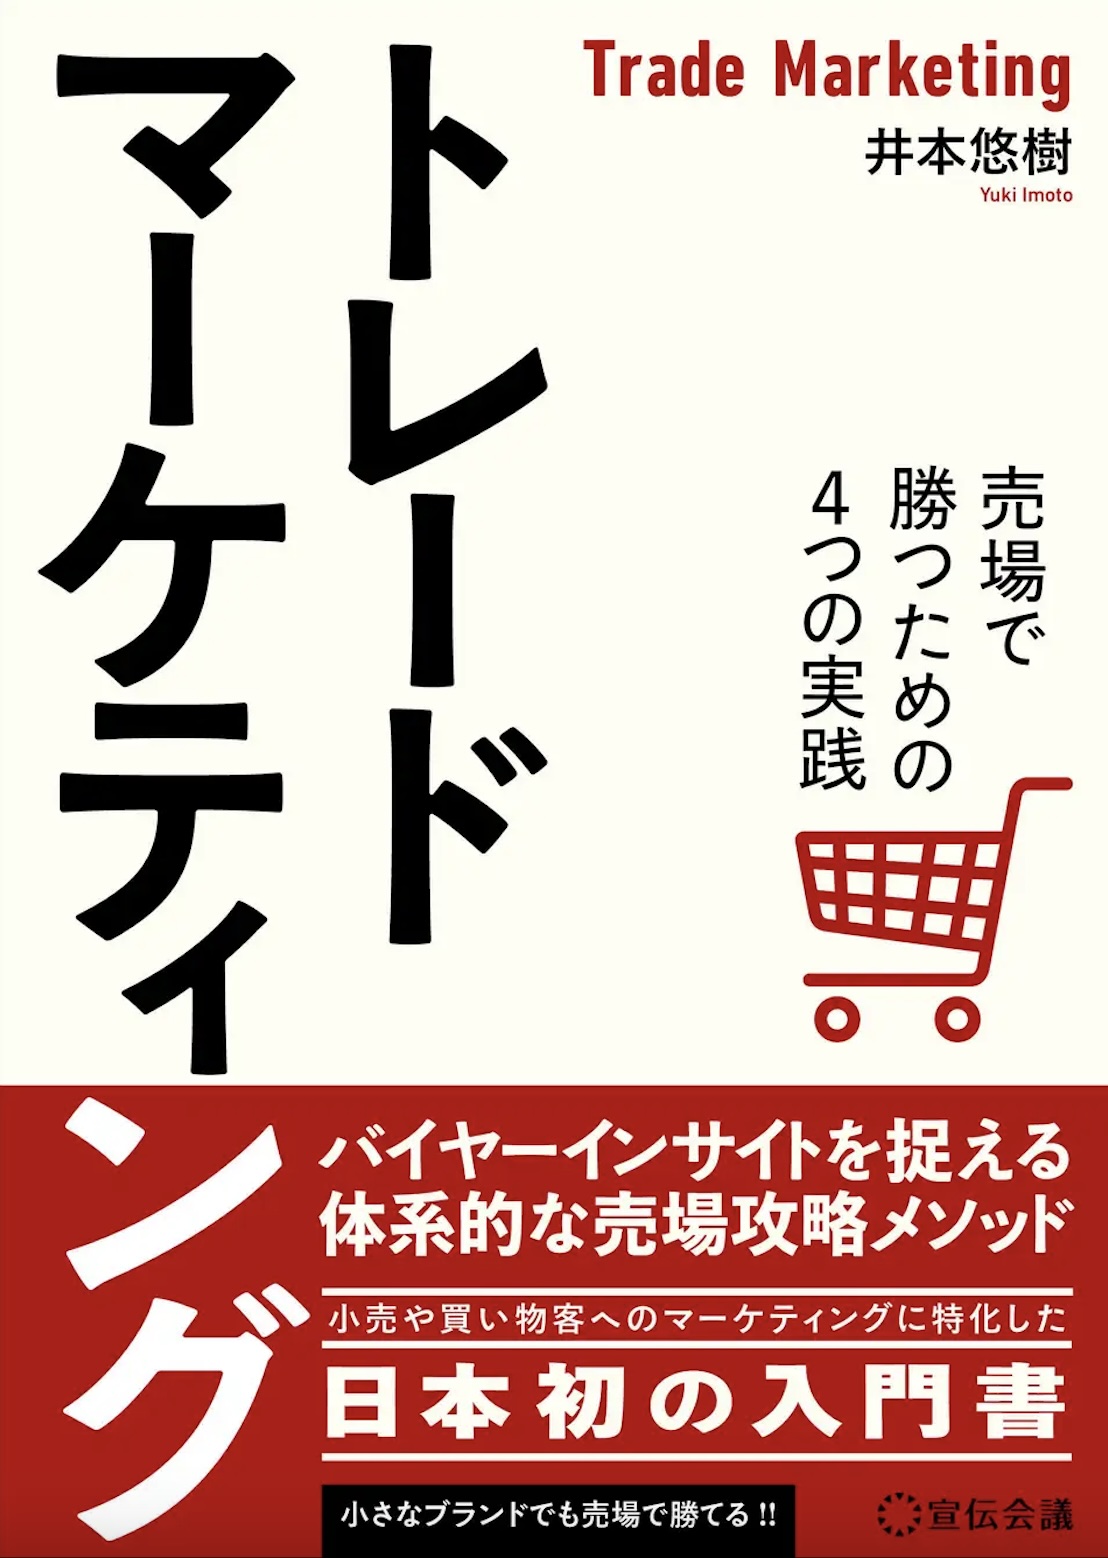 「小売」や「買い物客」へのマーケティングに特化した、“日本初の入門書”